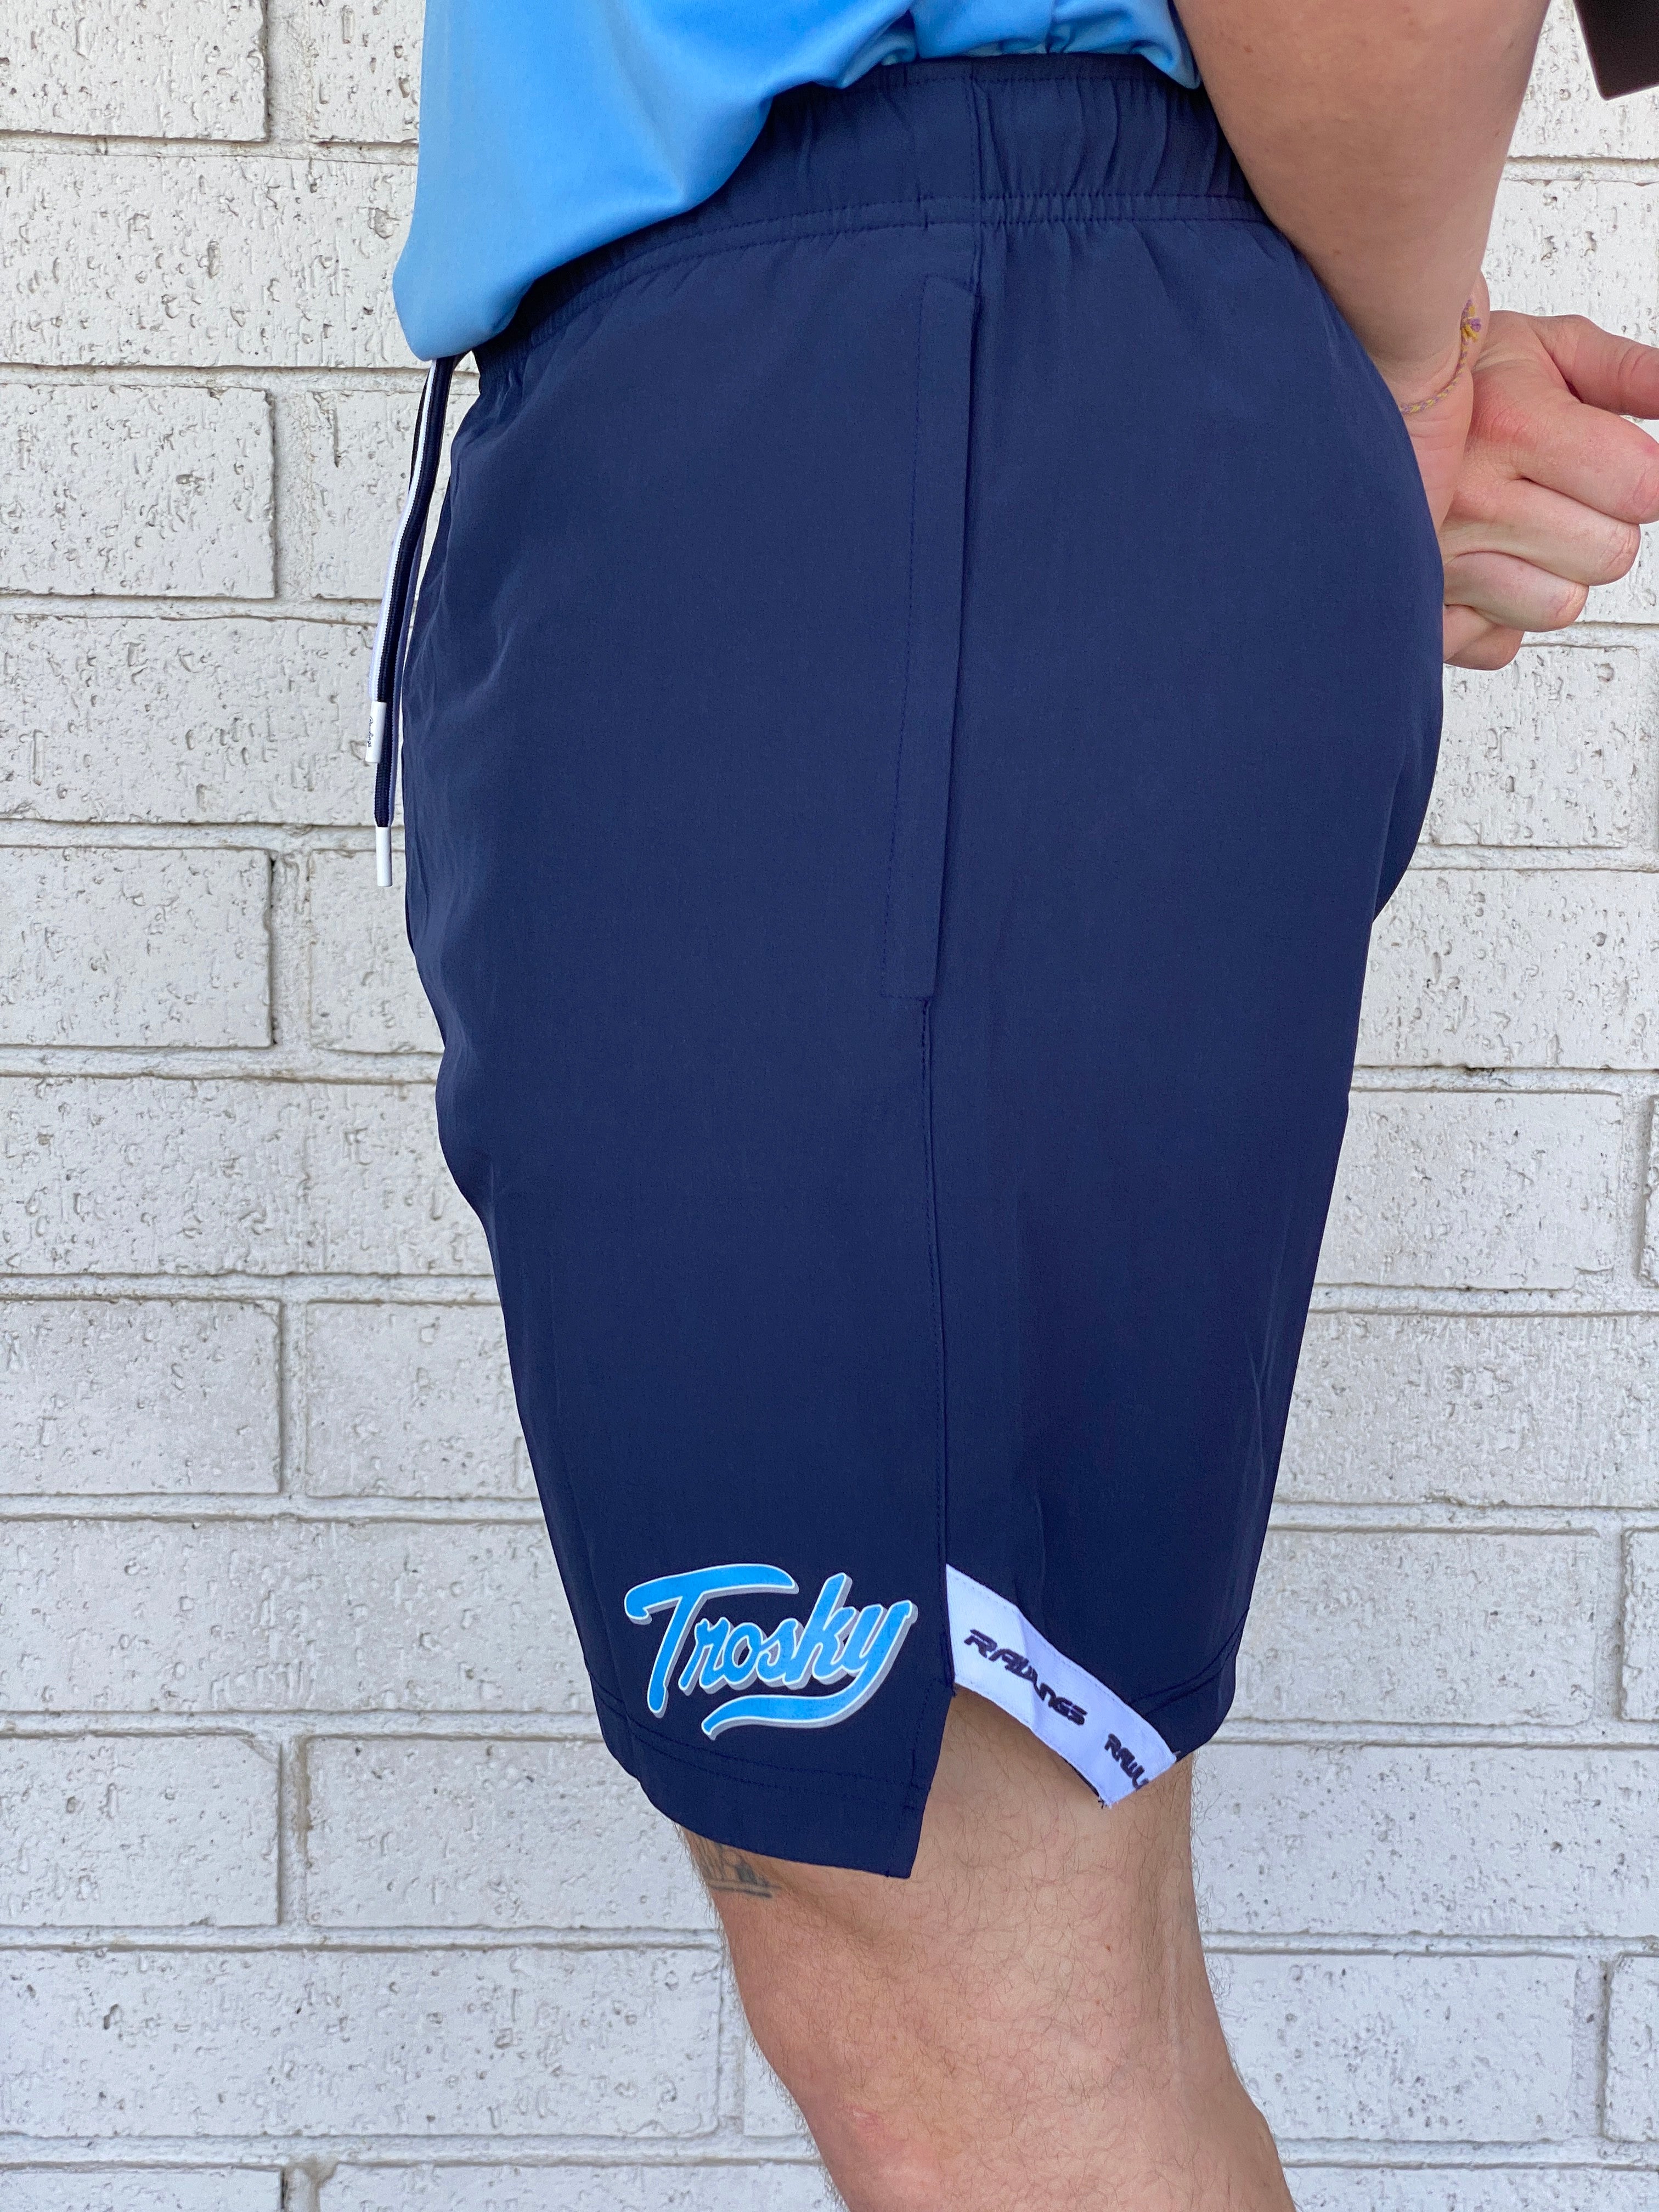 Rawlings Trosky Shorts - Navy XXXL